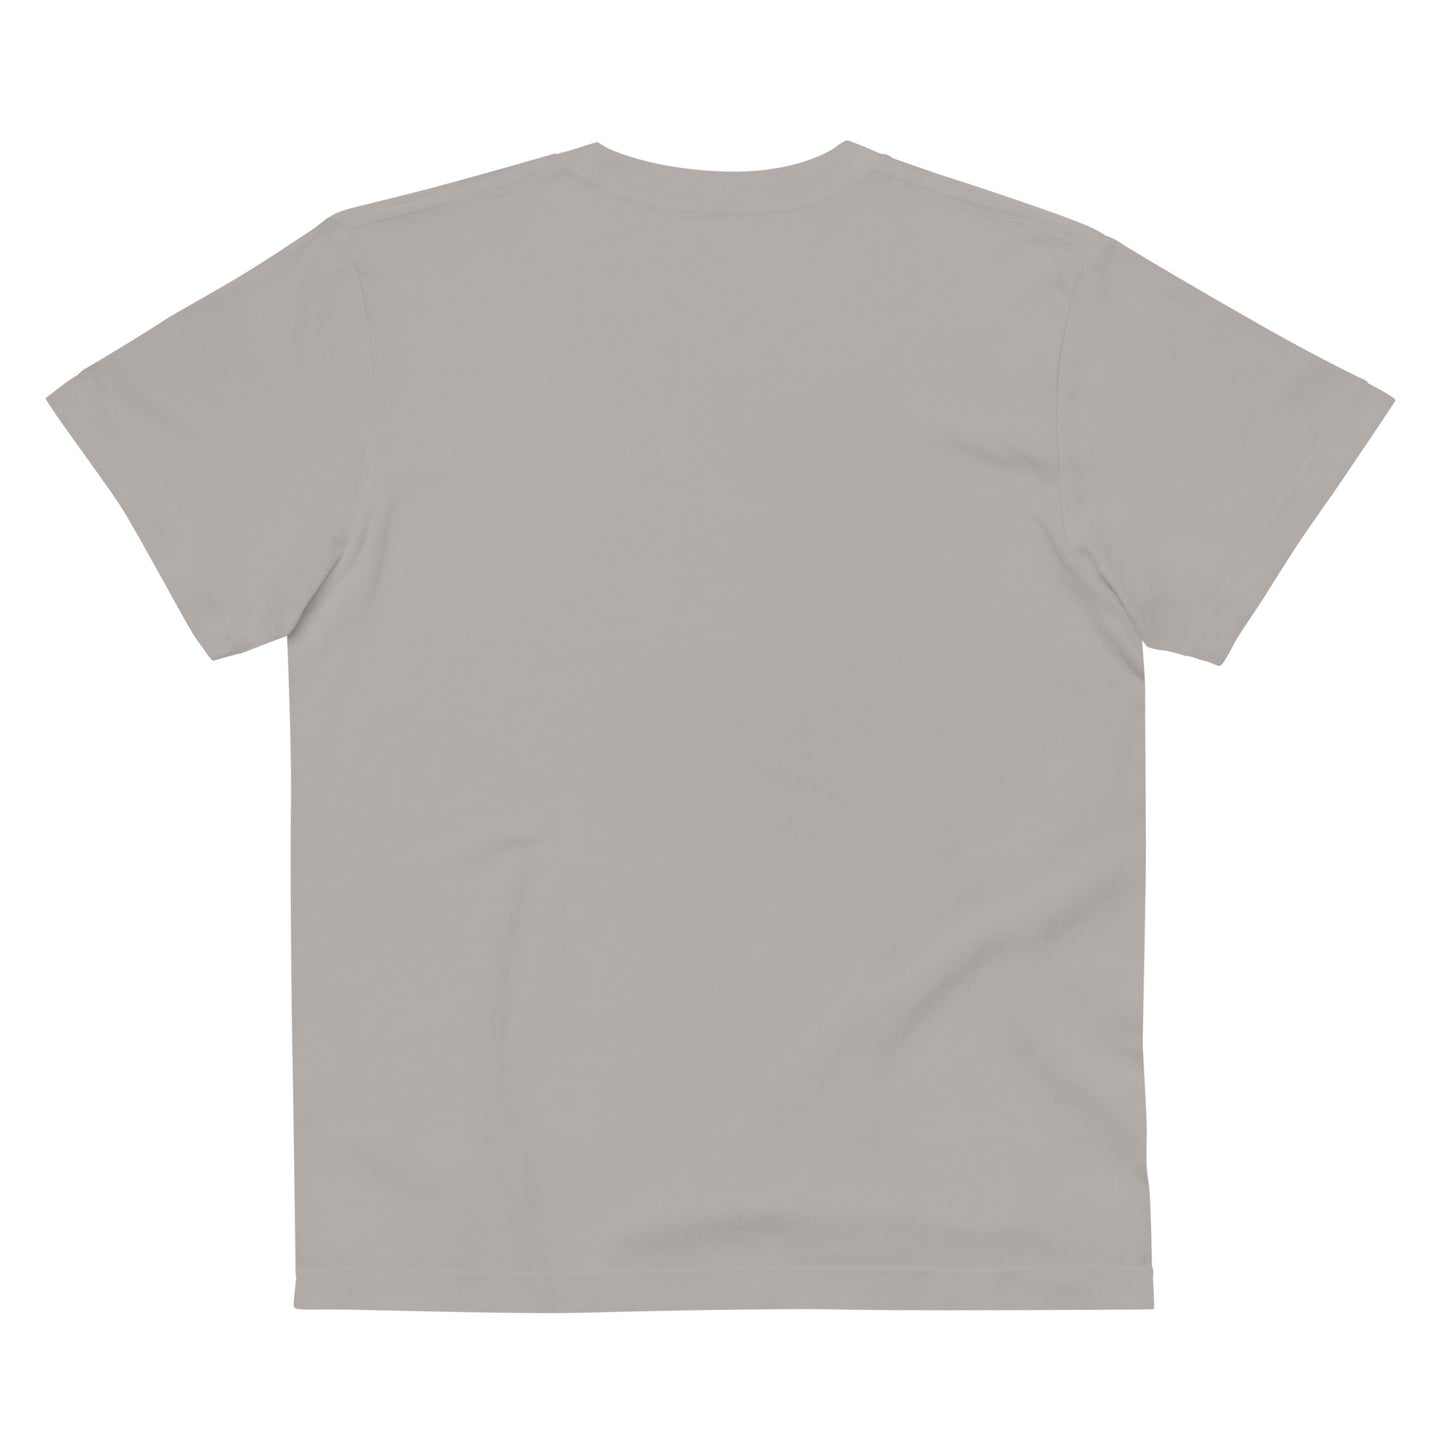 P011 - 高品質コットンTシャツ (Get set!：グレー/チャコール)